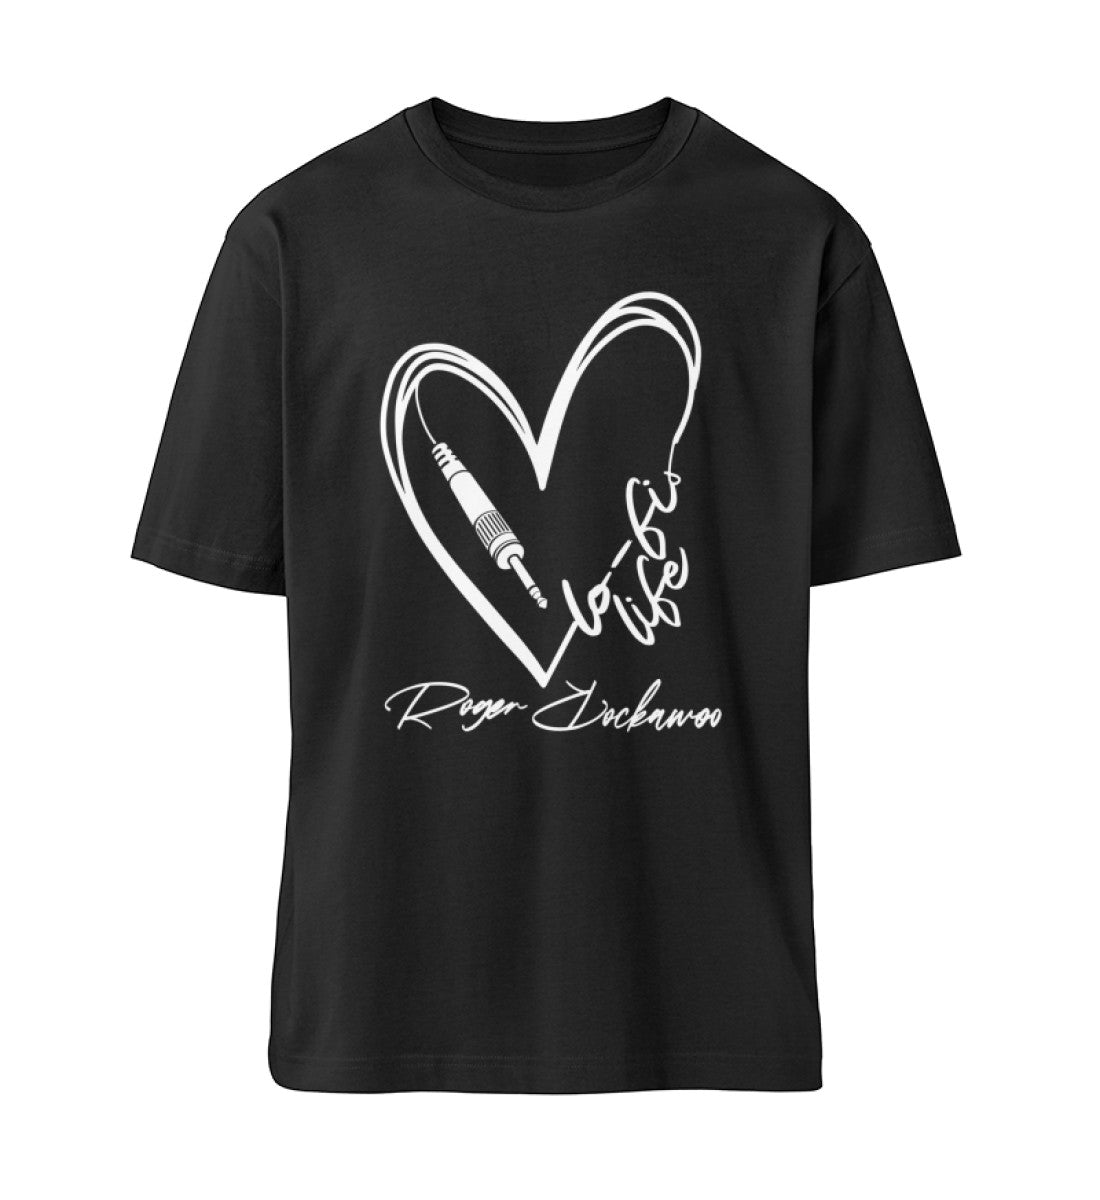 Schwarzes T-Shirt Unisex Relaxed Fit für Damen und Herren bedruckt mit dem Design der Roger Rockawoo Kollektion Musiker LoFi Life Guitar Plug